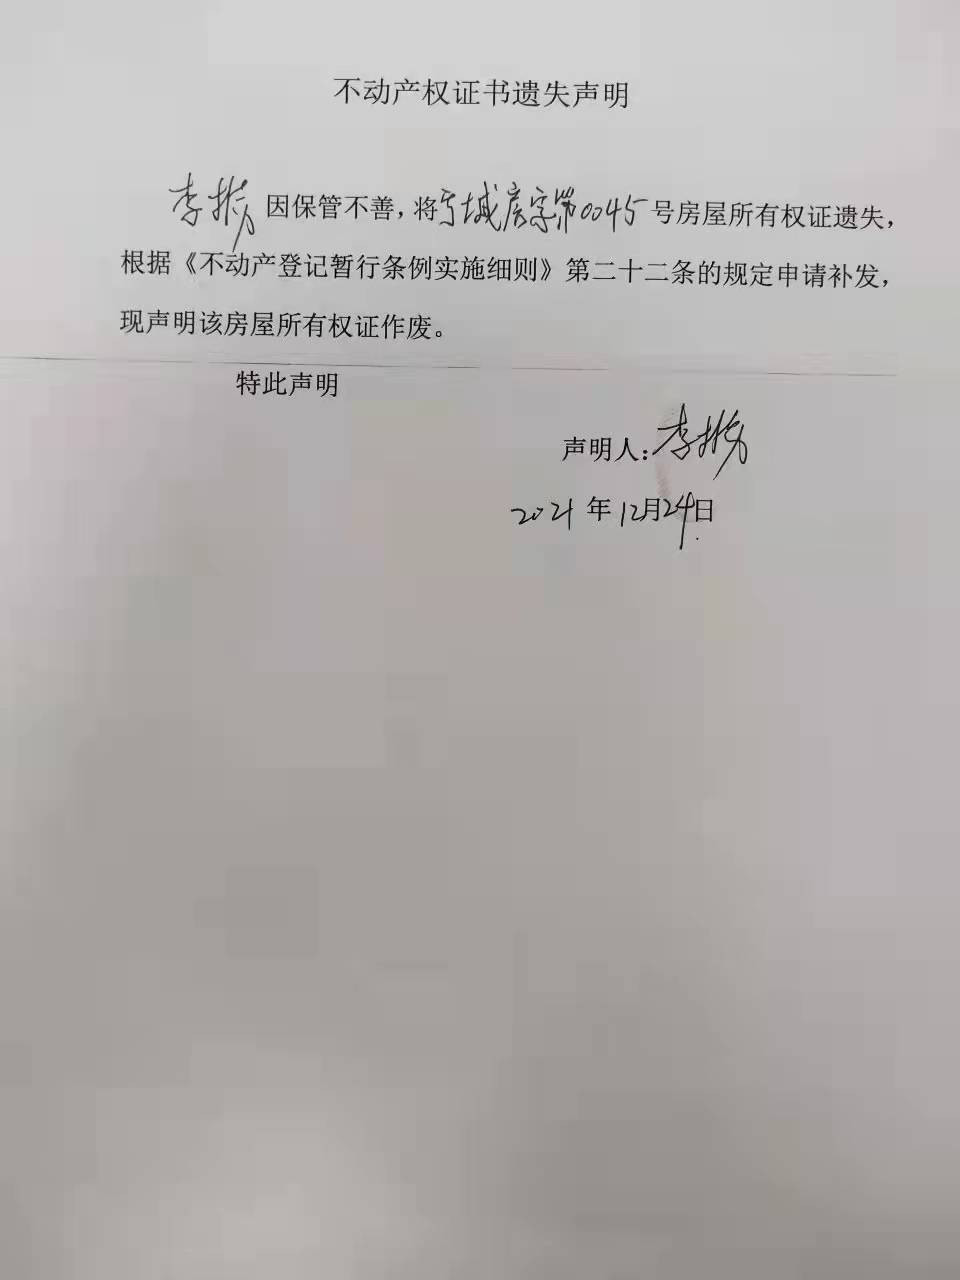 2021年12月24日   李振不动产遗失声明 .jpg